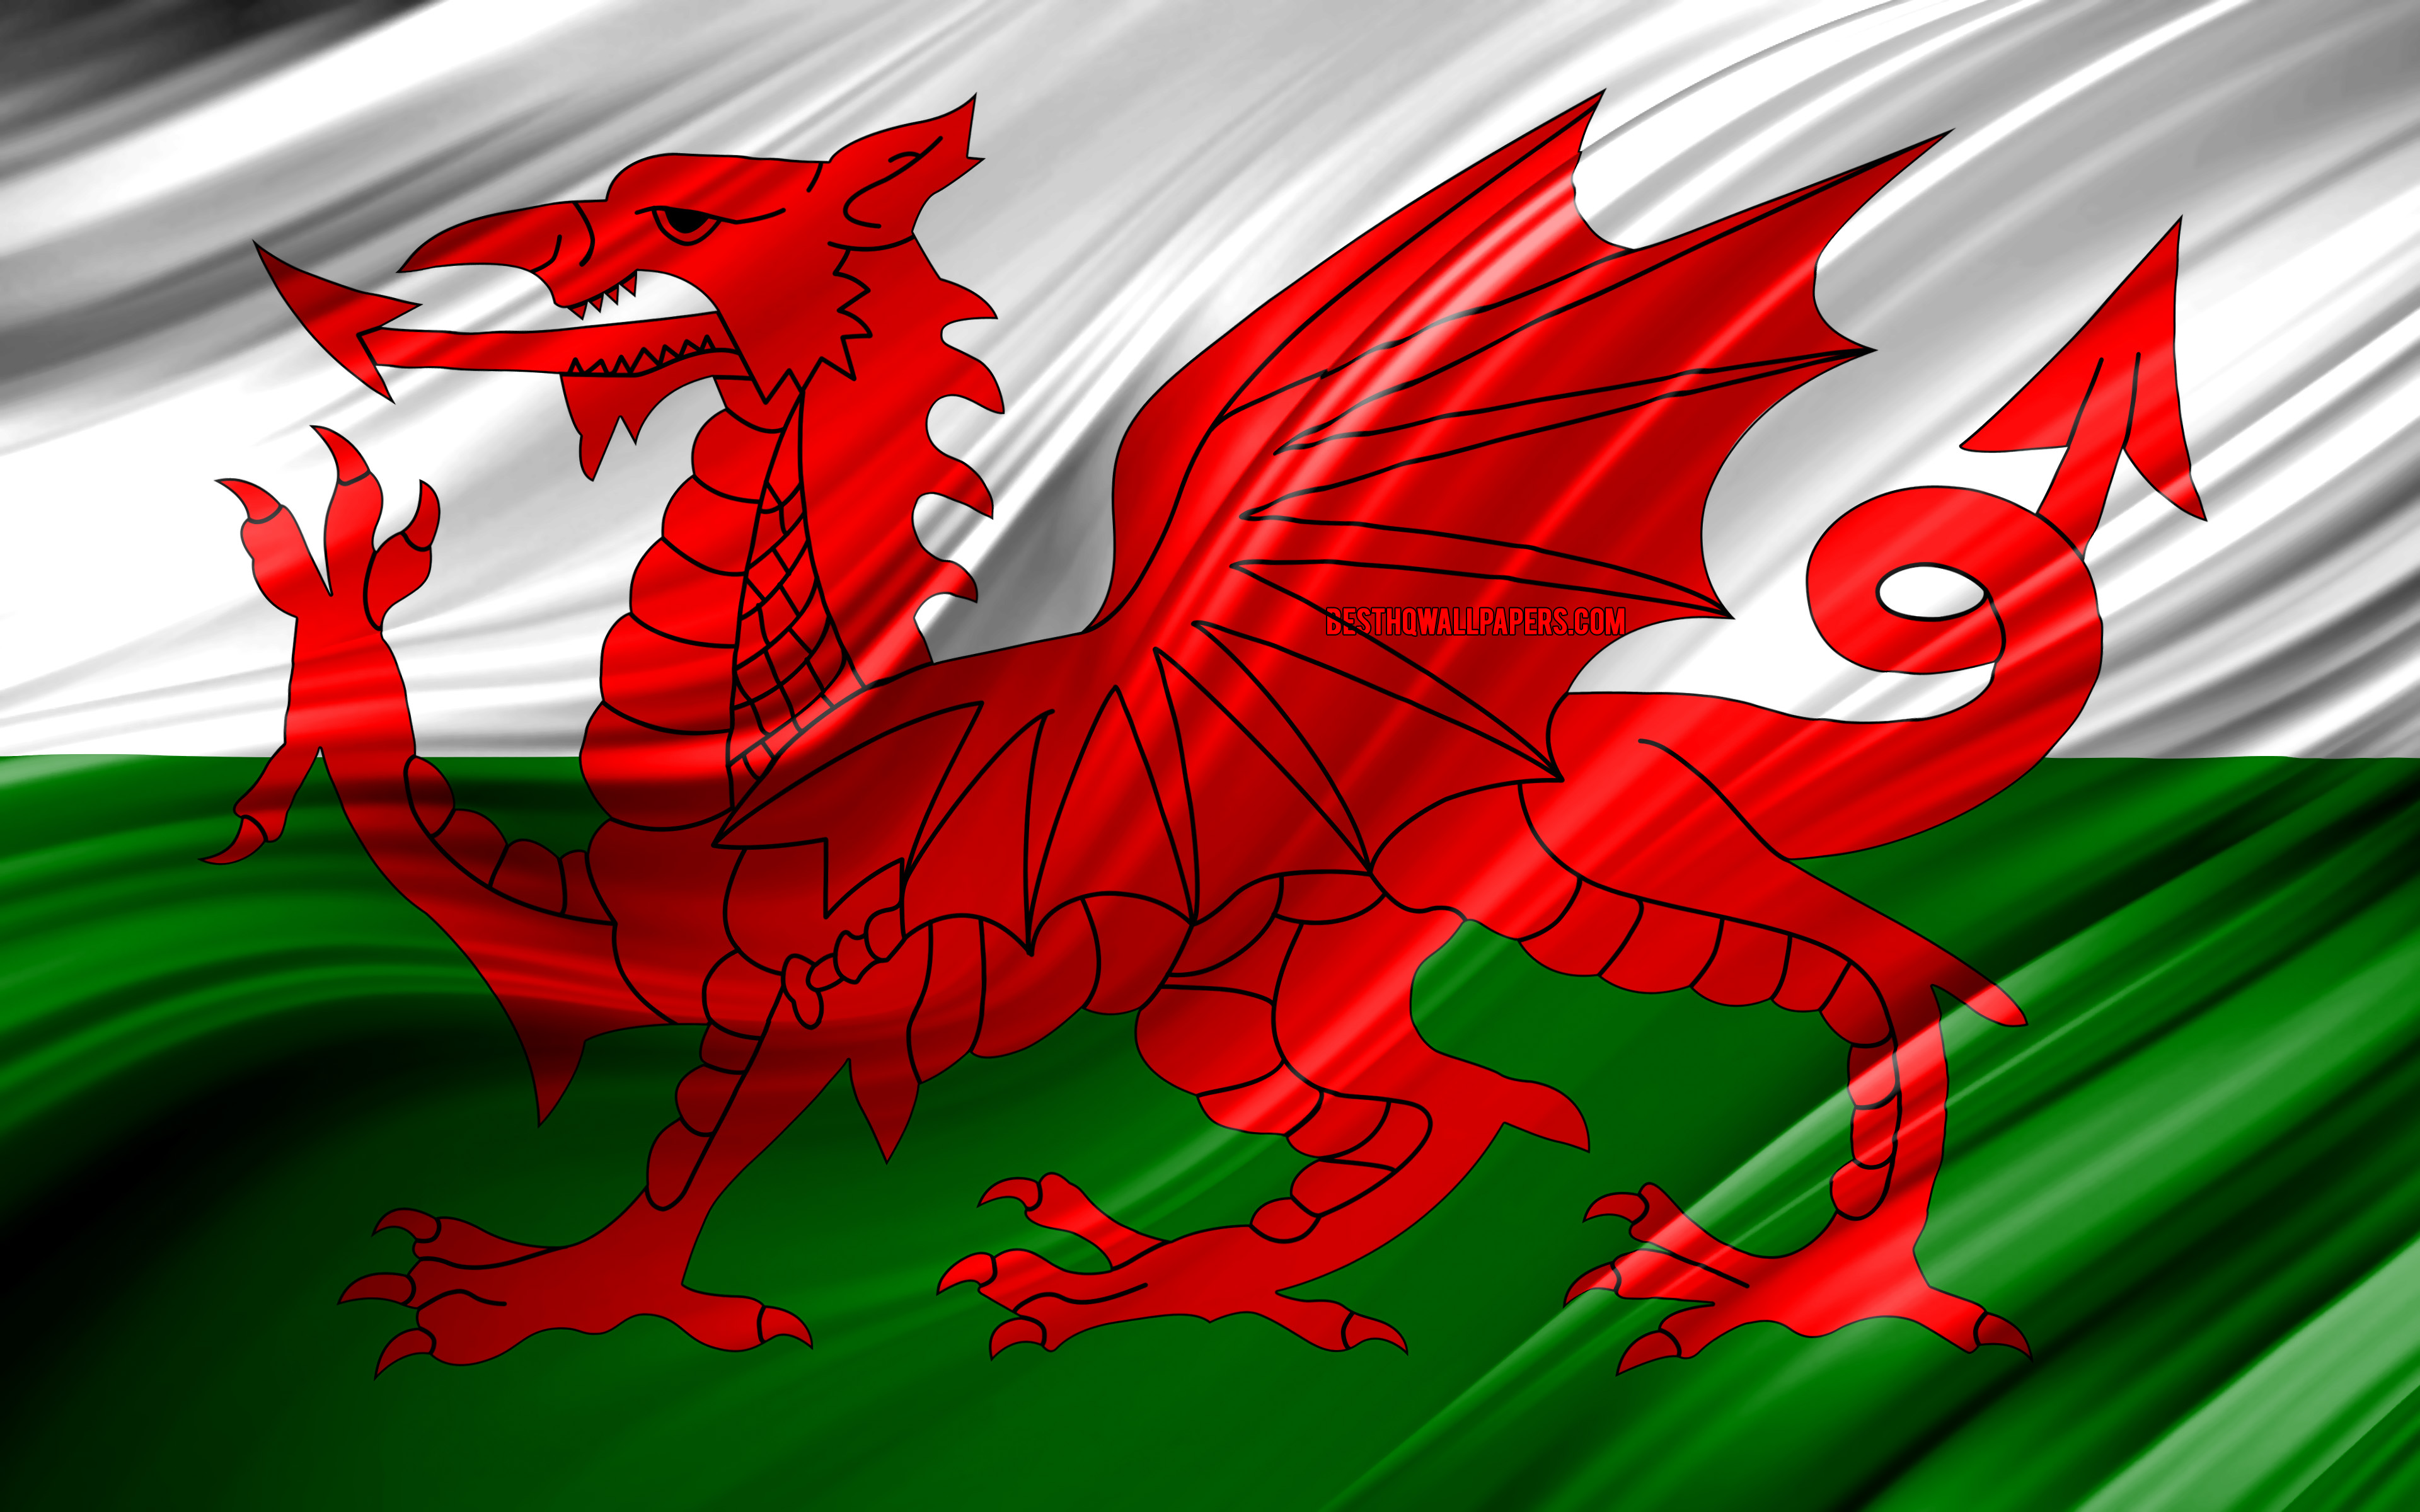 Welsh. Флаг Уэльса. Красный дракон на флаге Уэльса. Валлийский дракон флаг Уэльса. Уэльс флаг флаг.